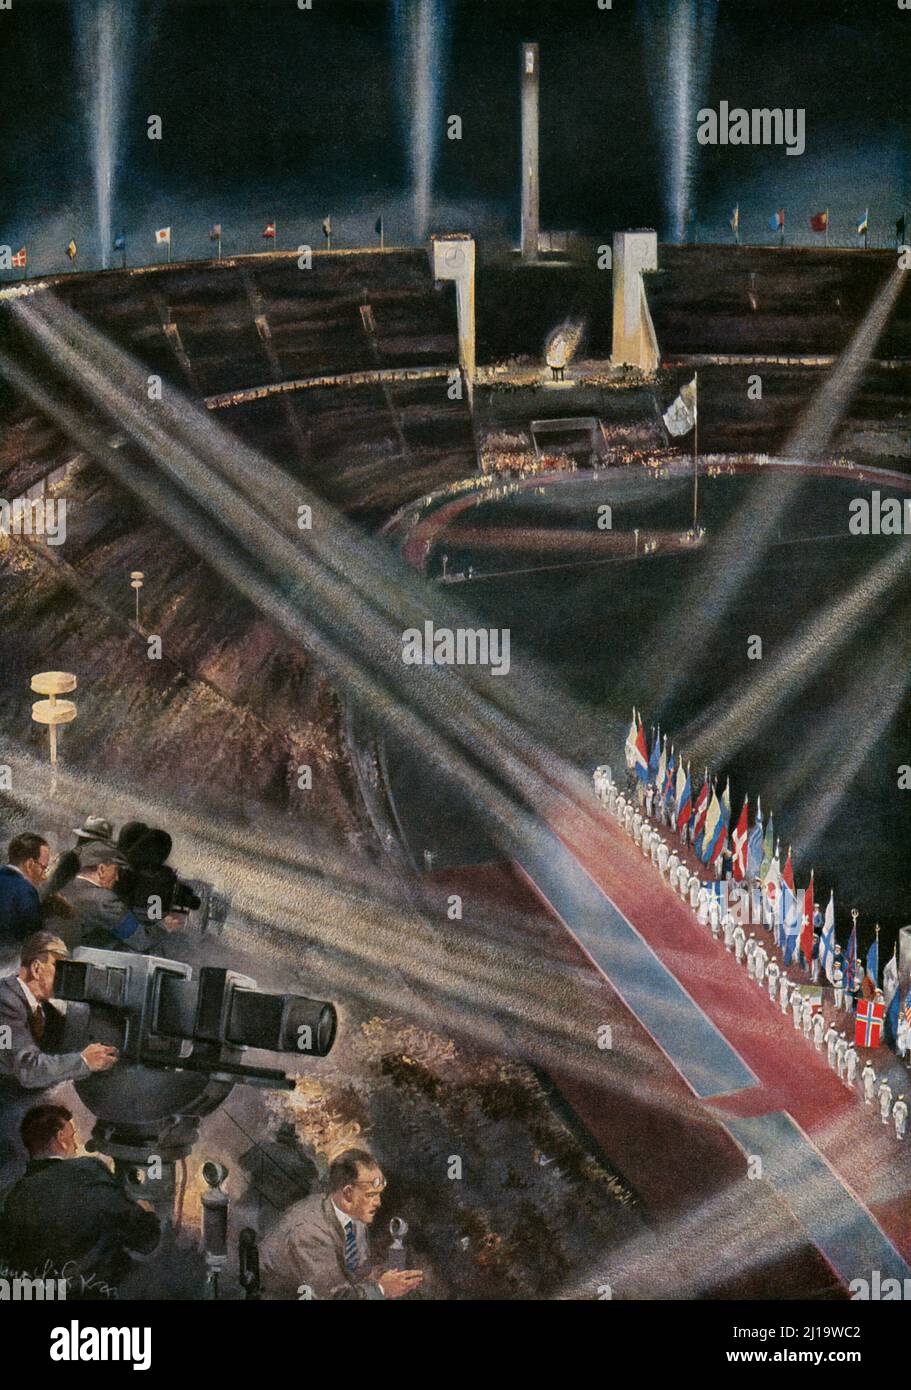 La cérémonie de clôture dans le stade olympique, peinture Banque D'Images